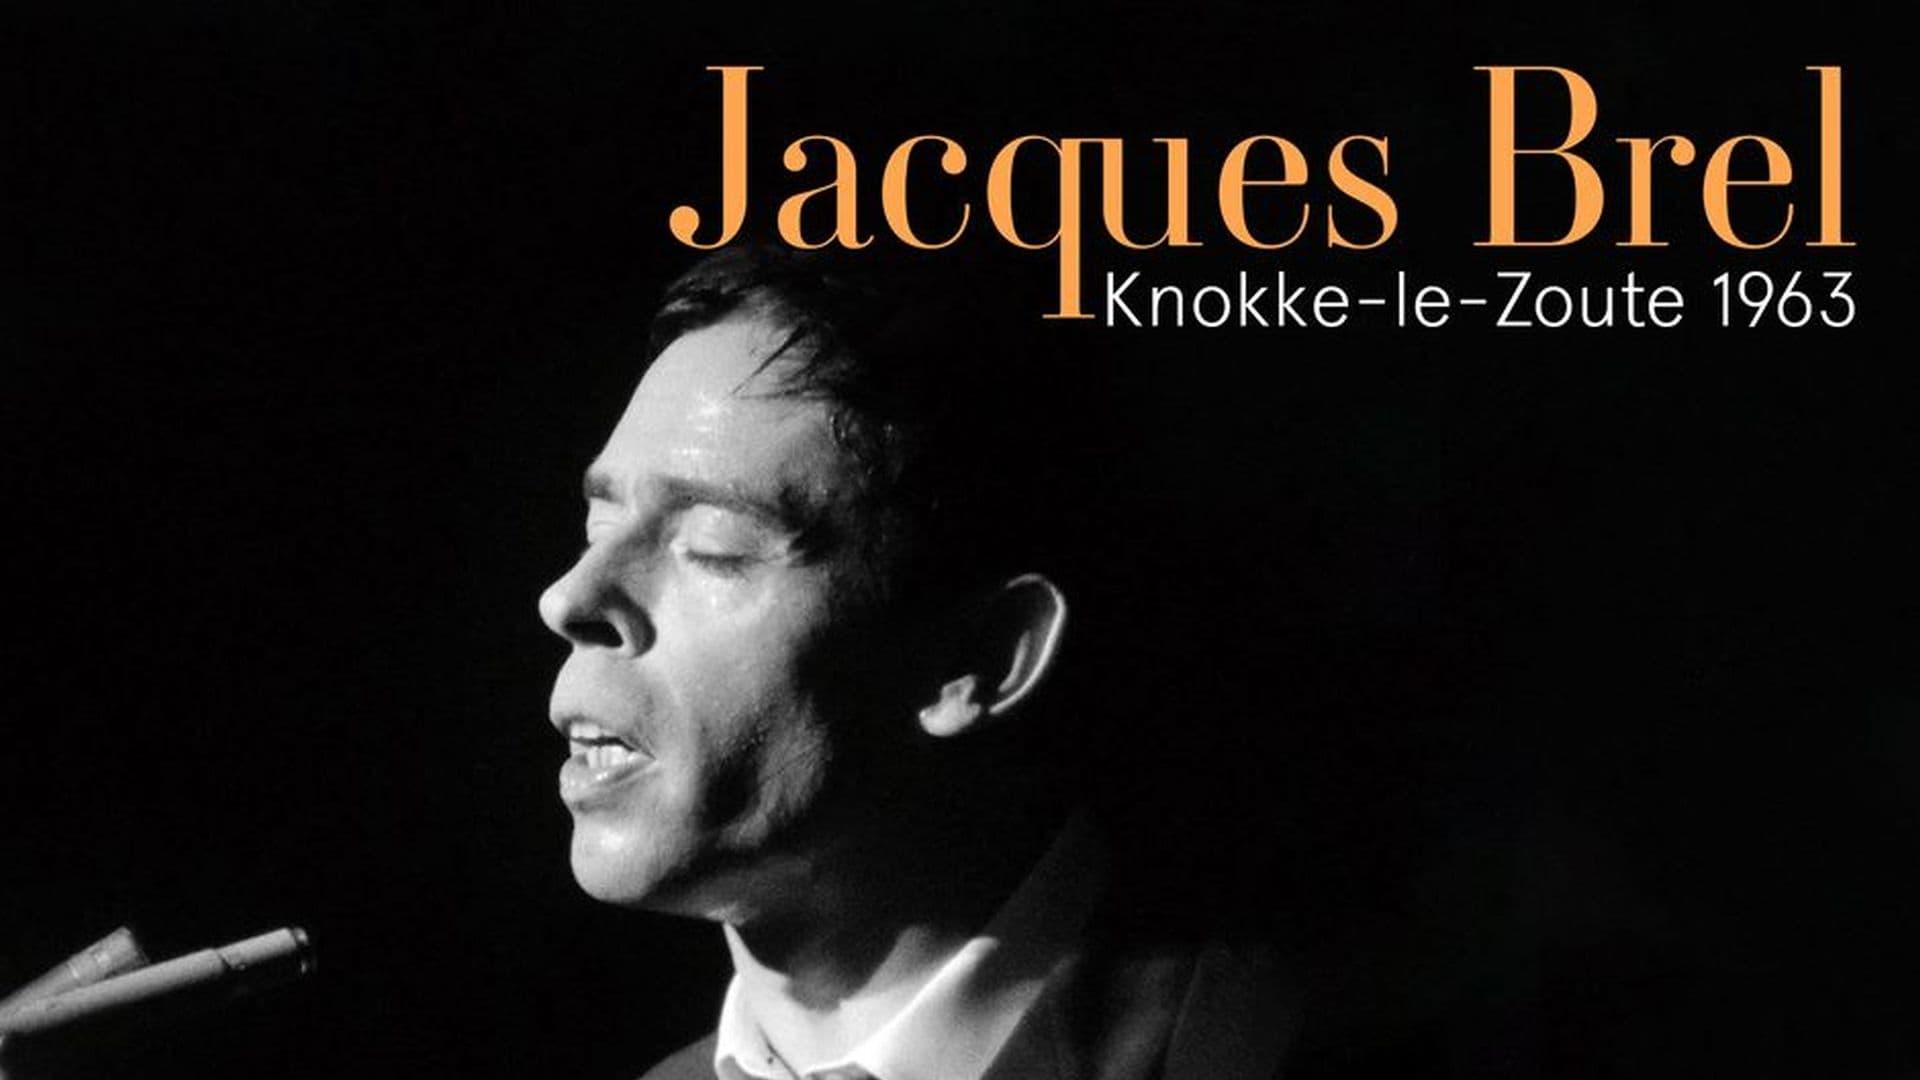 Jacques Brel à Knokke-le-Zoute, 1963 backdrop